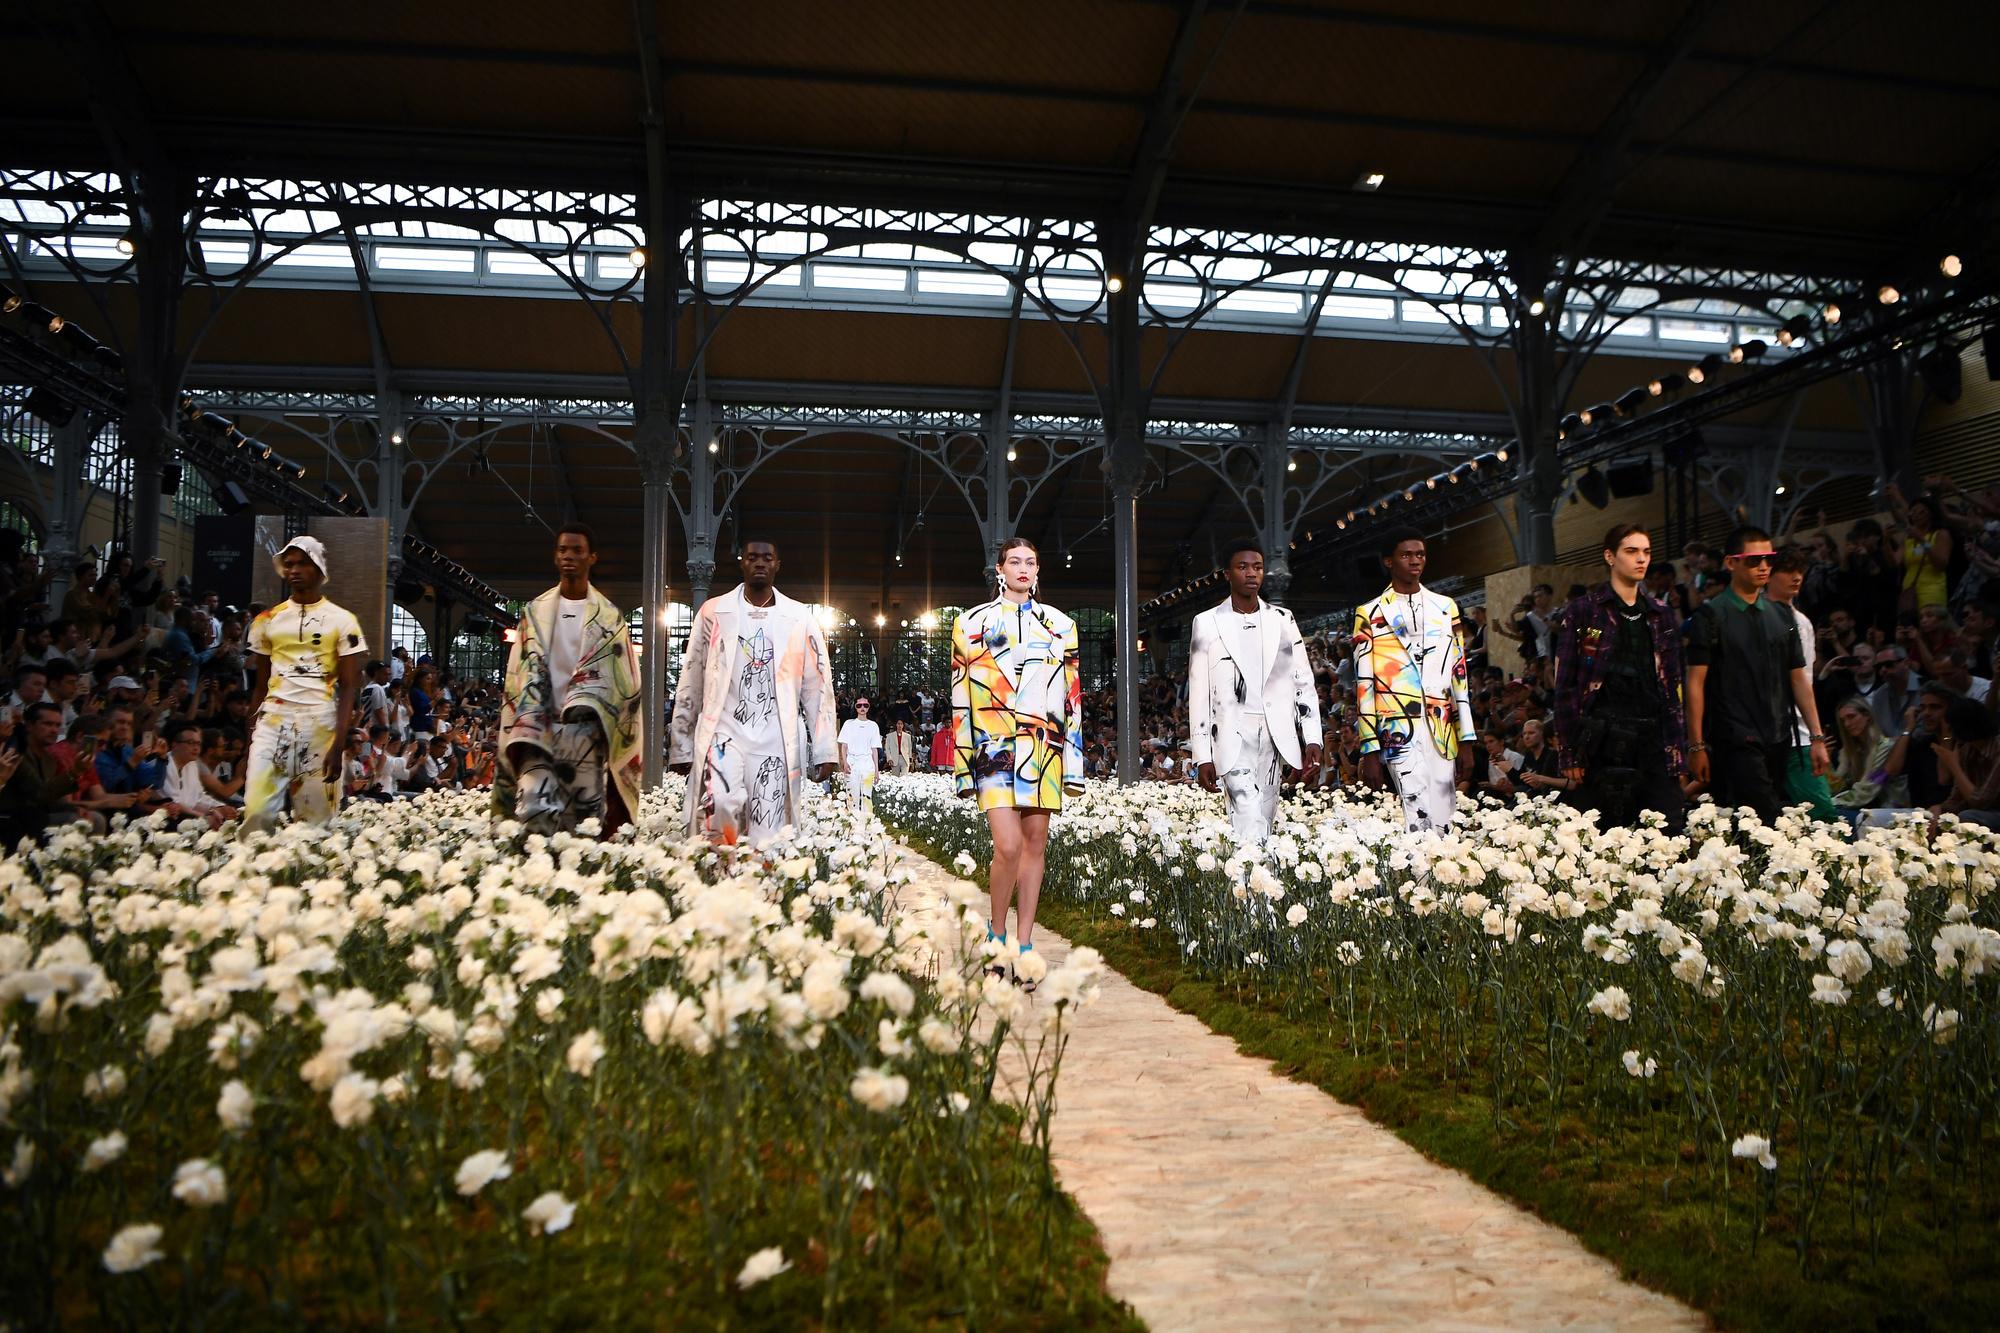 Het bloemenveld waar de modellen dwars doorheen liepen tijdens de show van Off-White.